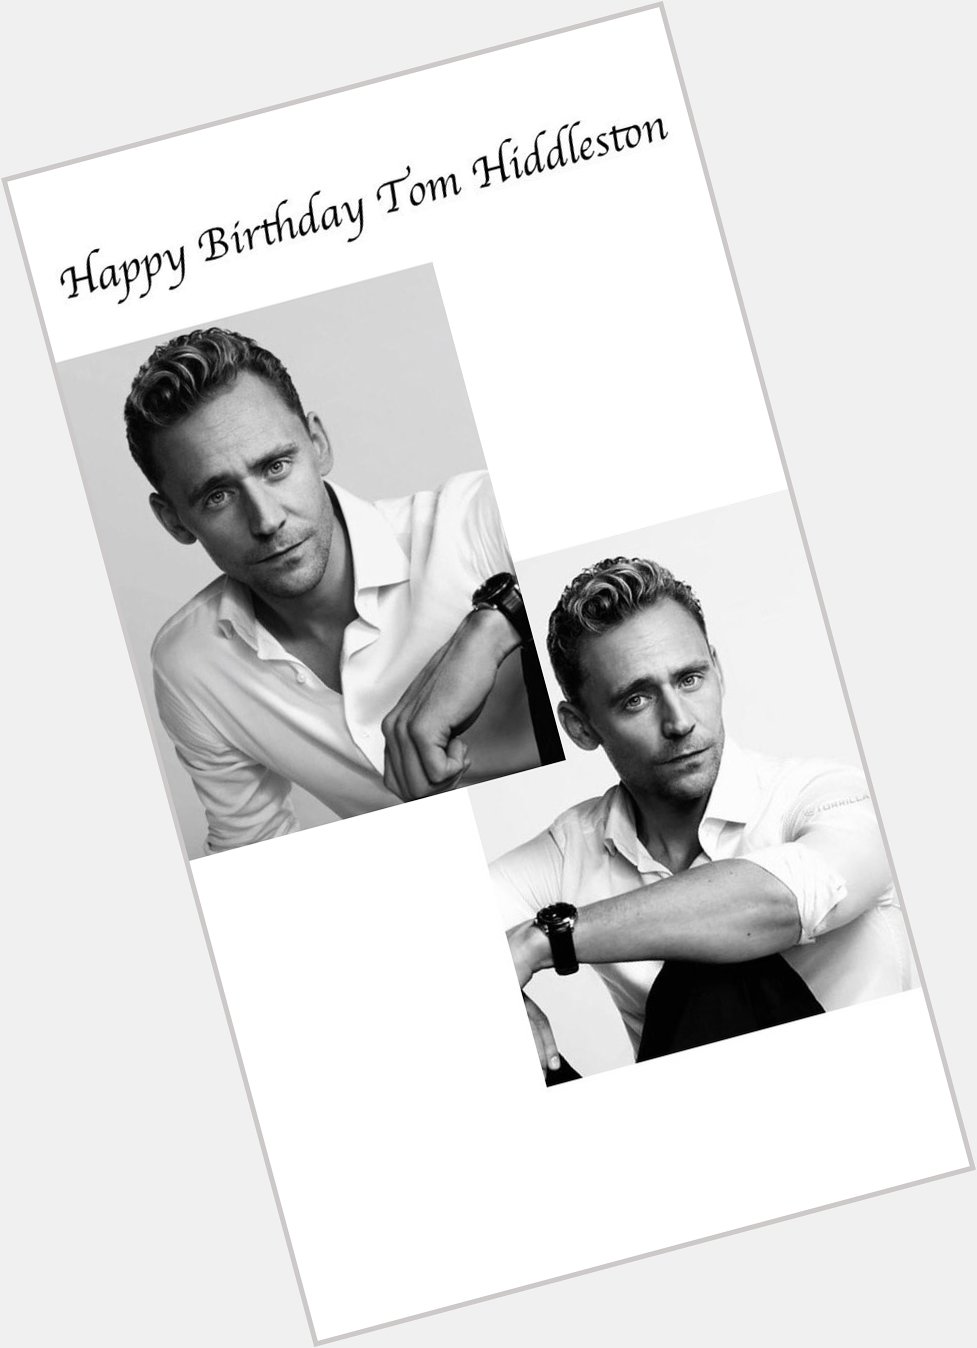 Happy Birthday to the lovely Tom Hiddleston! 